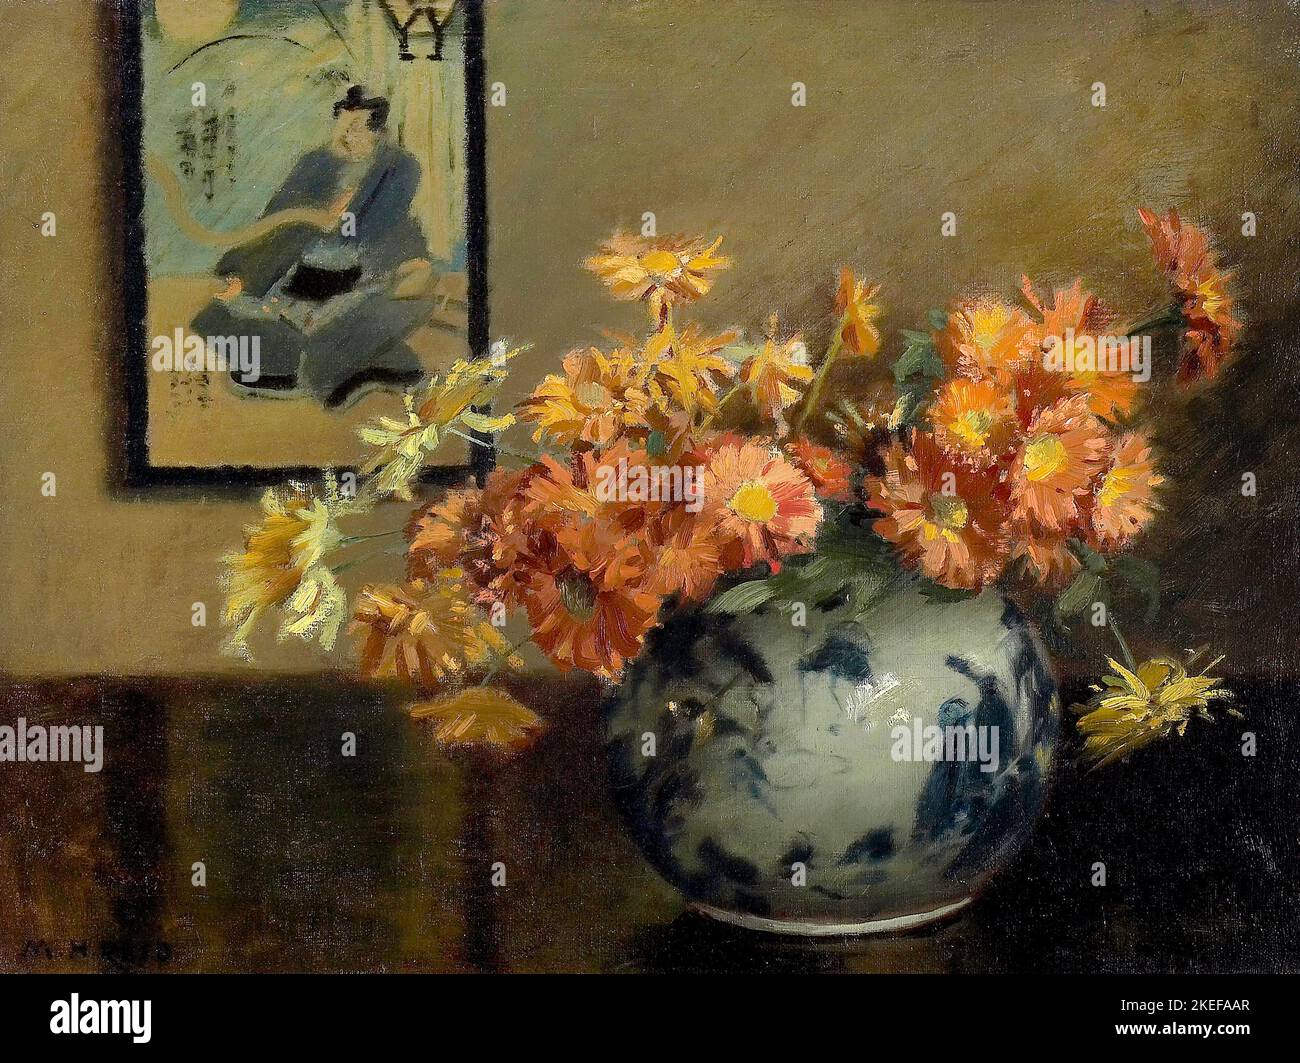 Mary Hiester Reid, Chrysanthemums, Un arrangement japonais, Circa 1890-1921, huile sur toile, Musée des beaux-arts de l'Ontario, Toronto, Canada. Banque D'Images